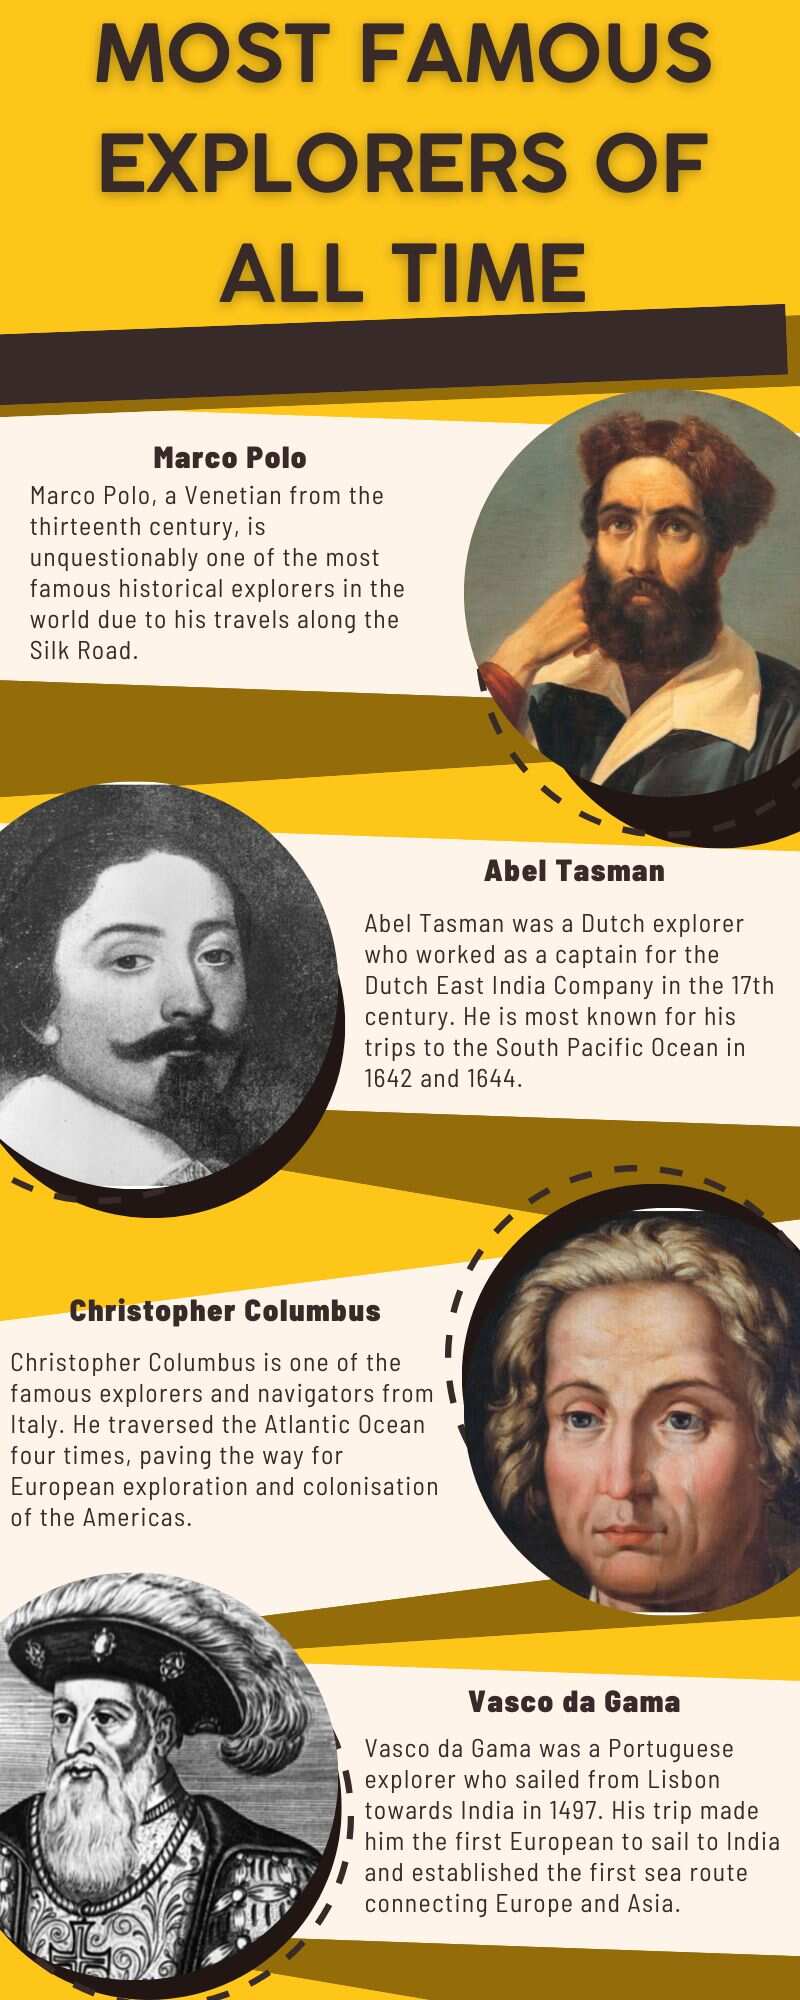 Most famous explorers